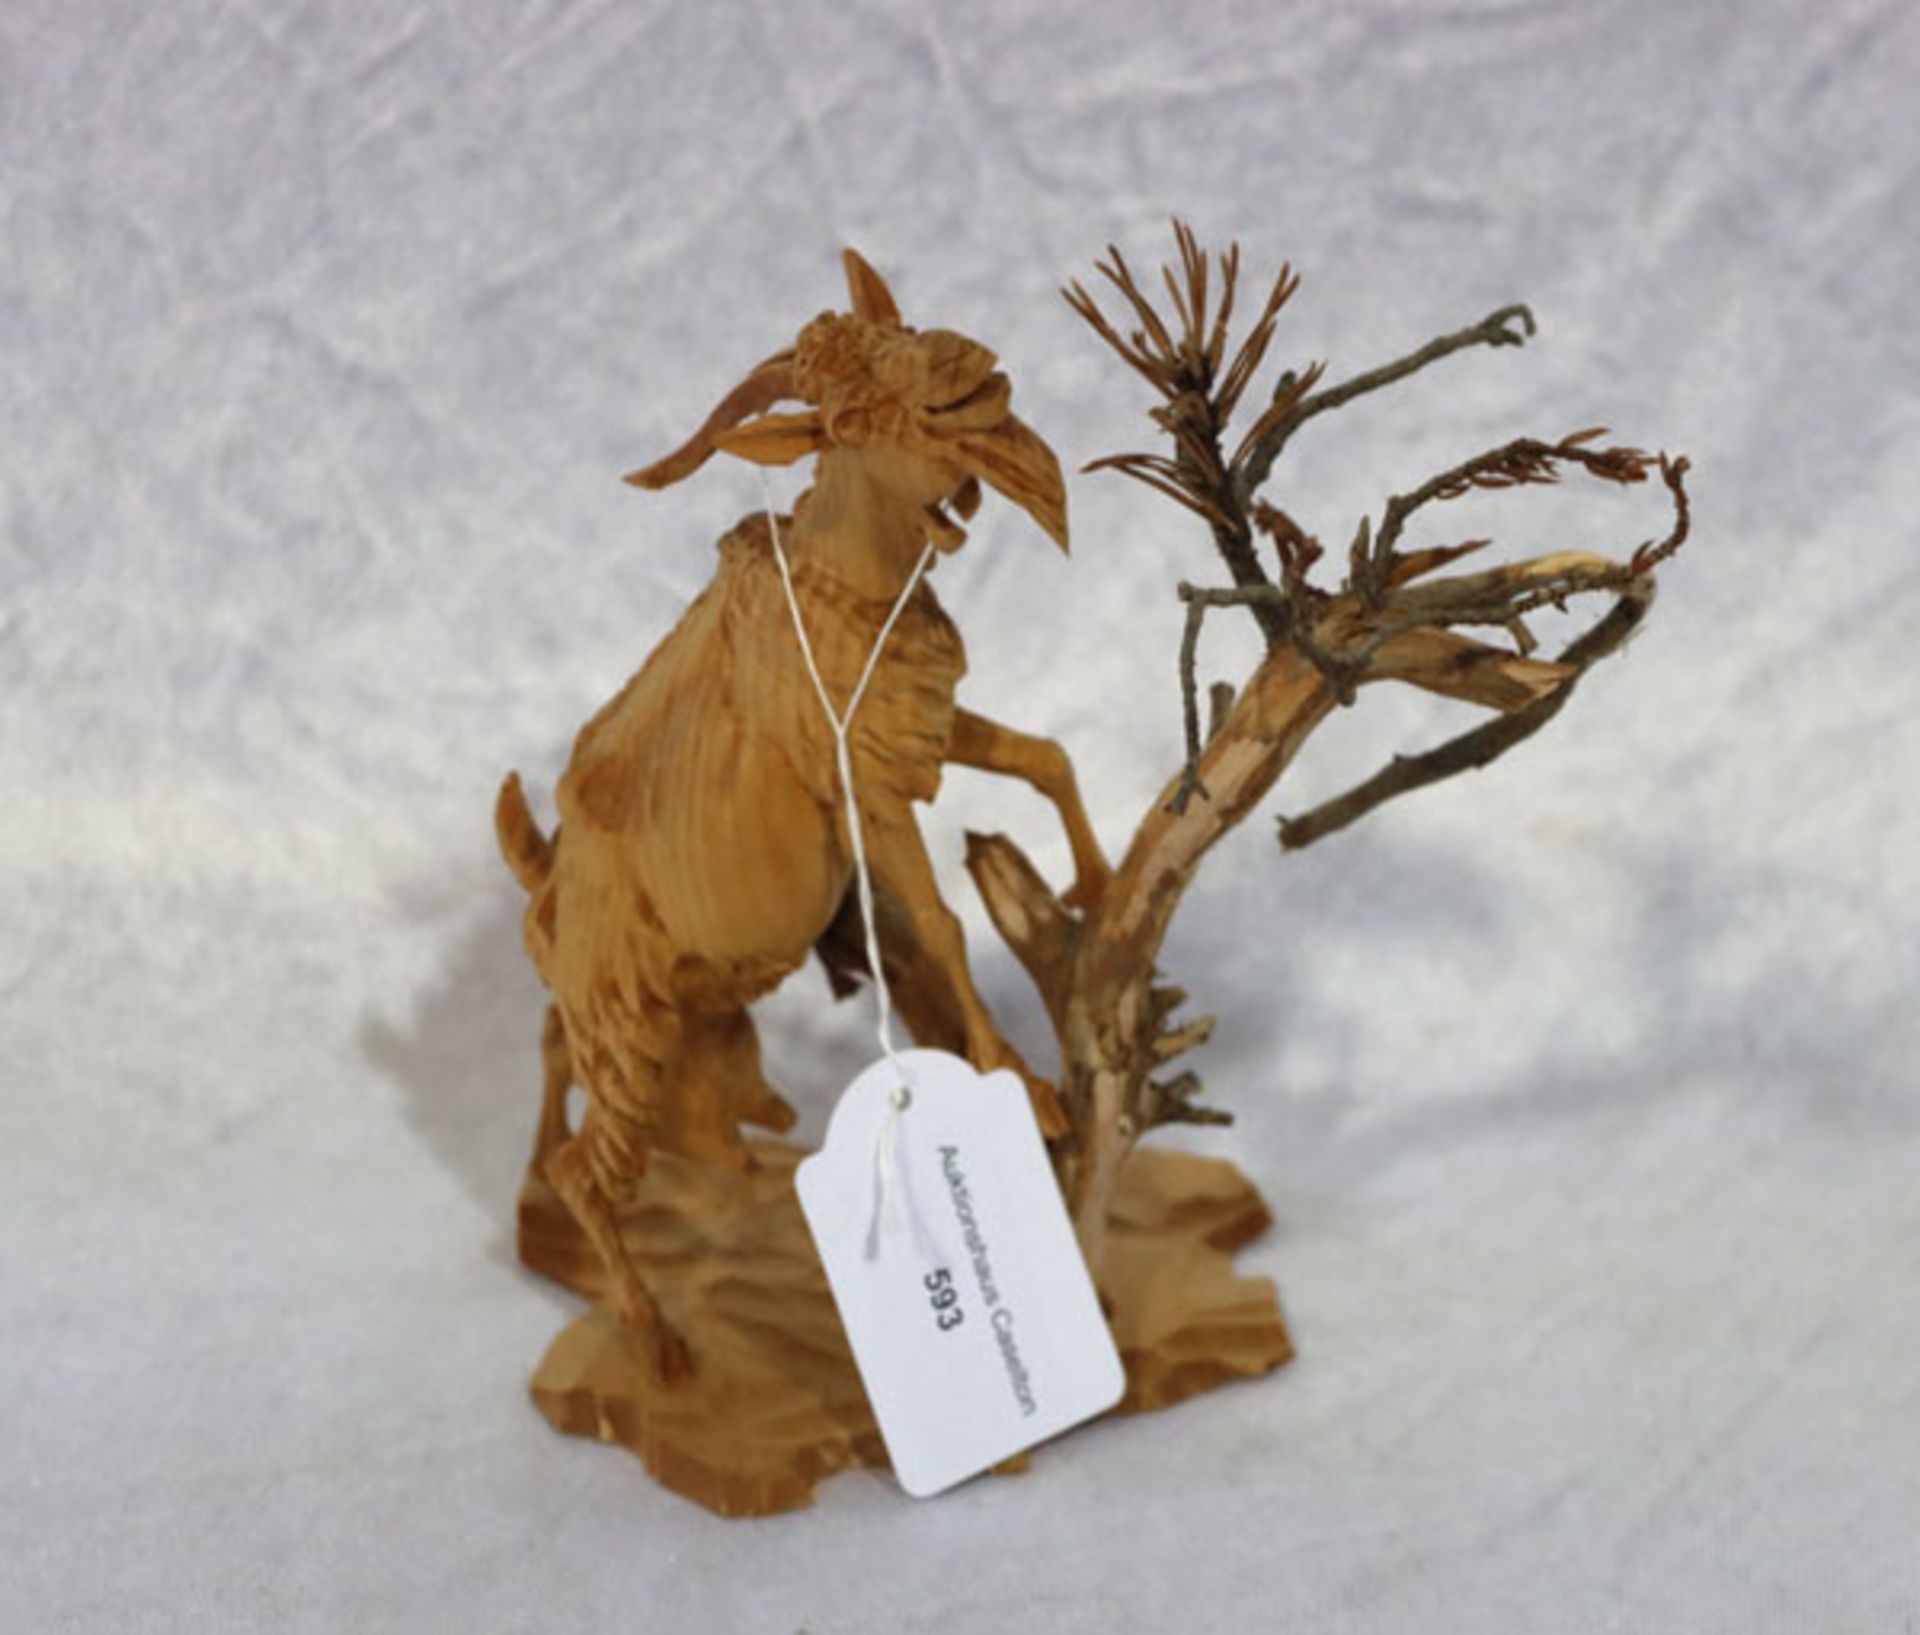 Feine Holzschnitzerei 'Ziegenbock an Baum', feine Handarbeit, H ca. 14,5 cm, kein Versand möglich